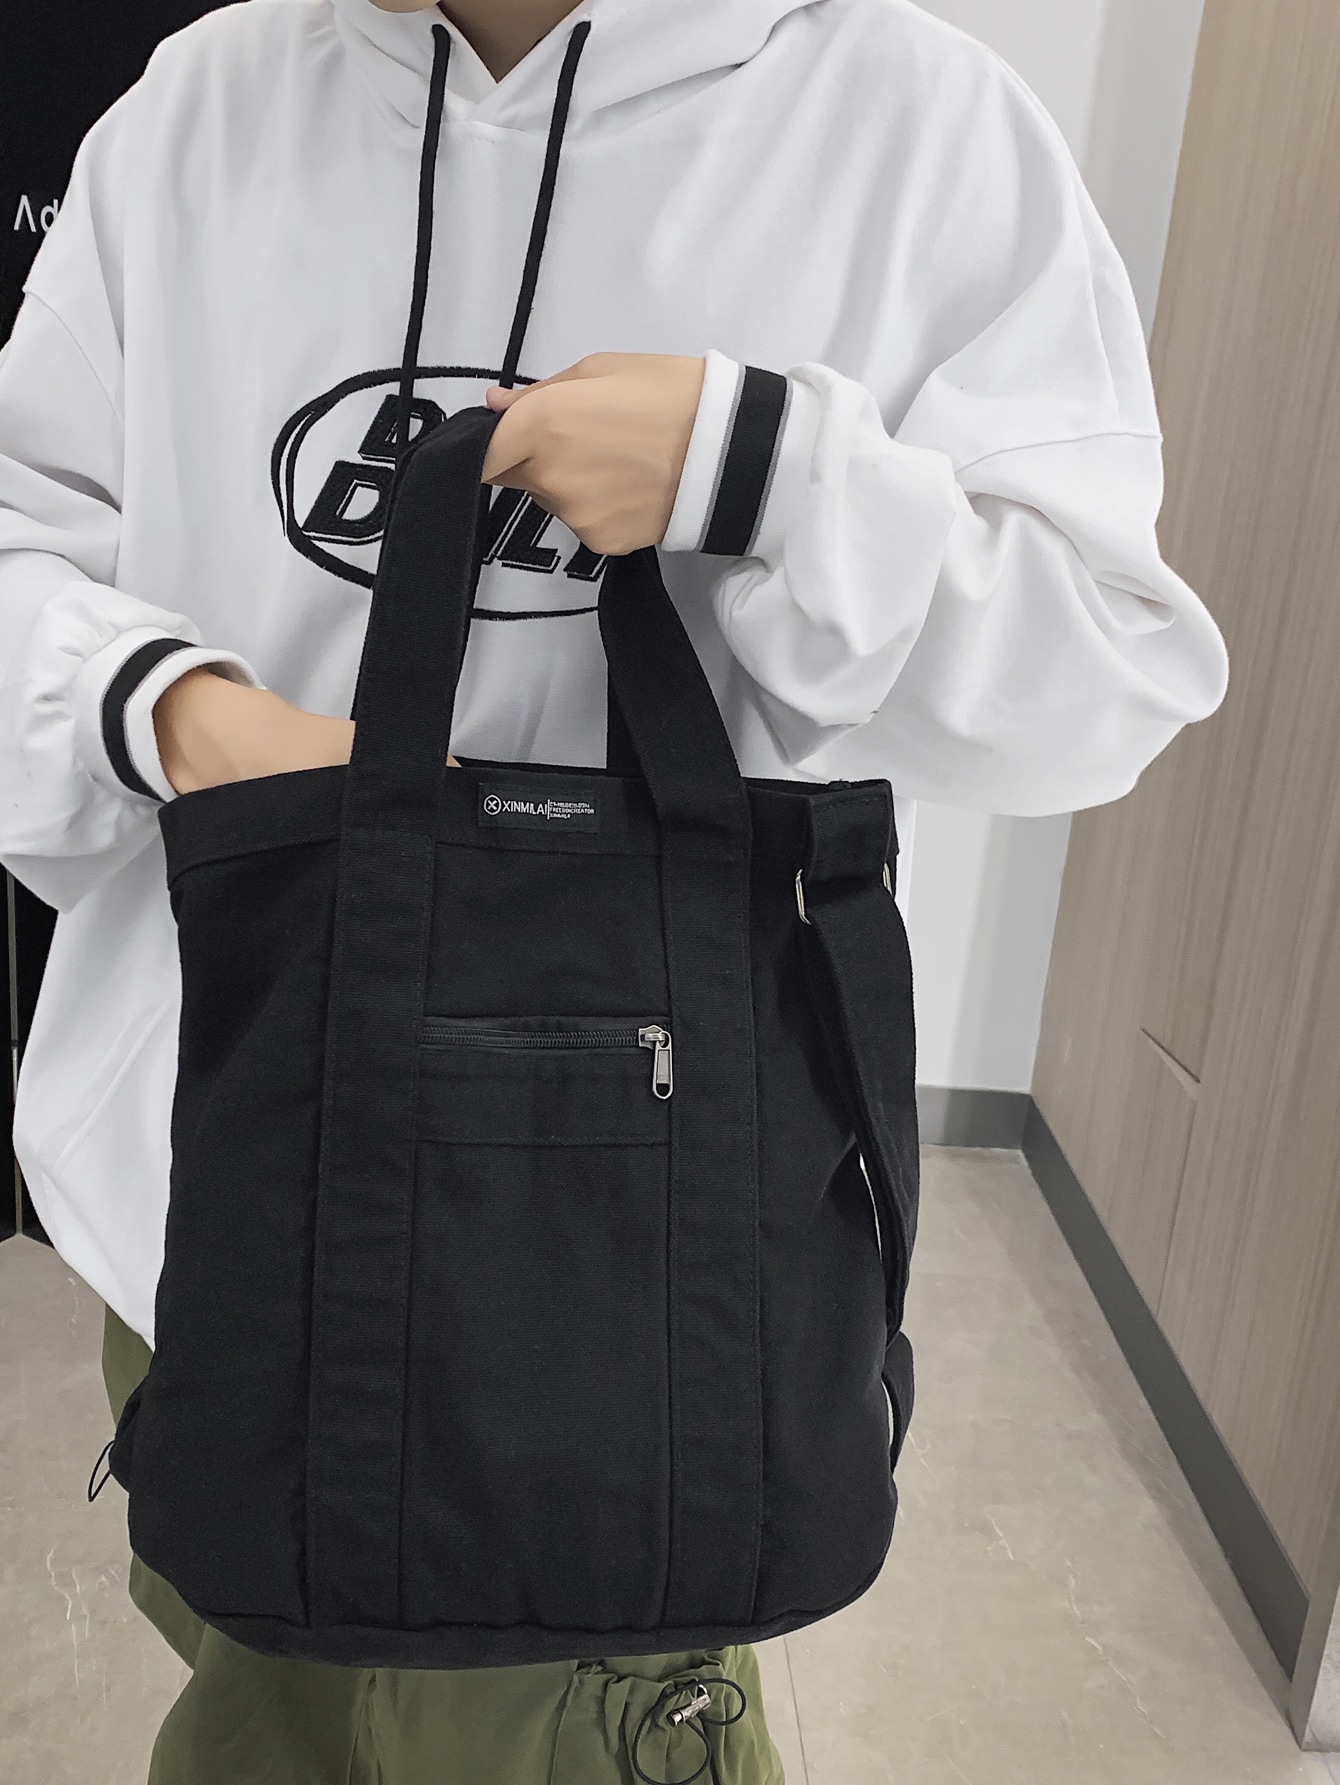 Мужская сумка-шоппер с буквенным рисунком Пляжная сумка Сумка для покупок Многоразовая сумка Спортивная сумка, черный